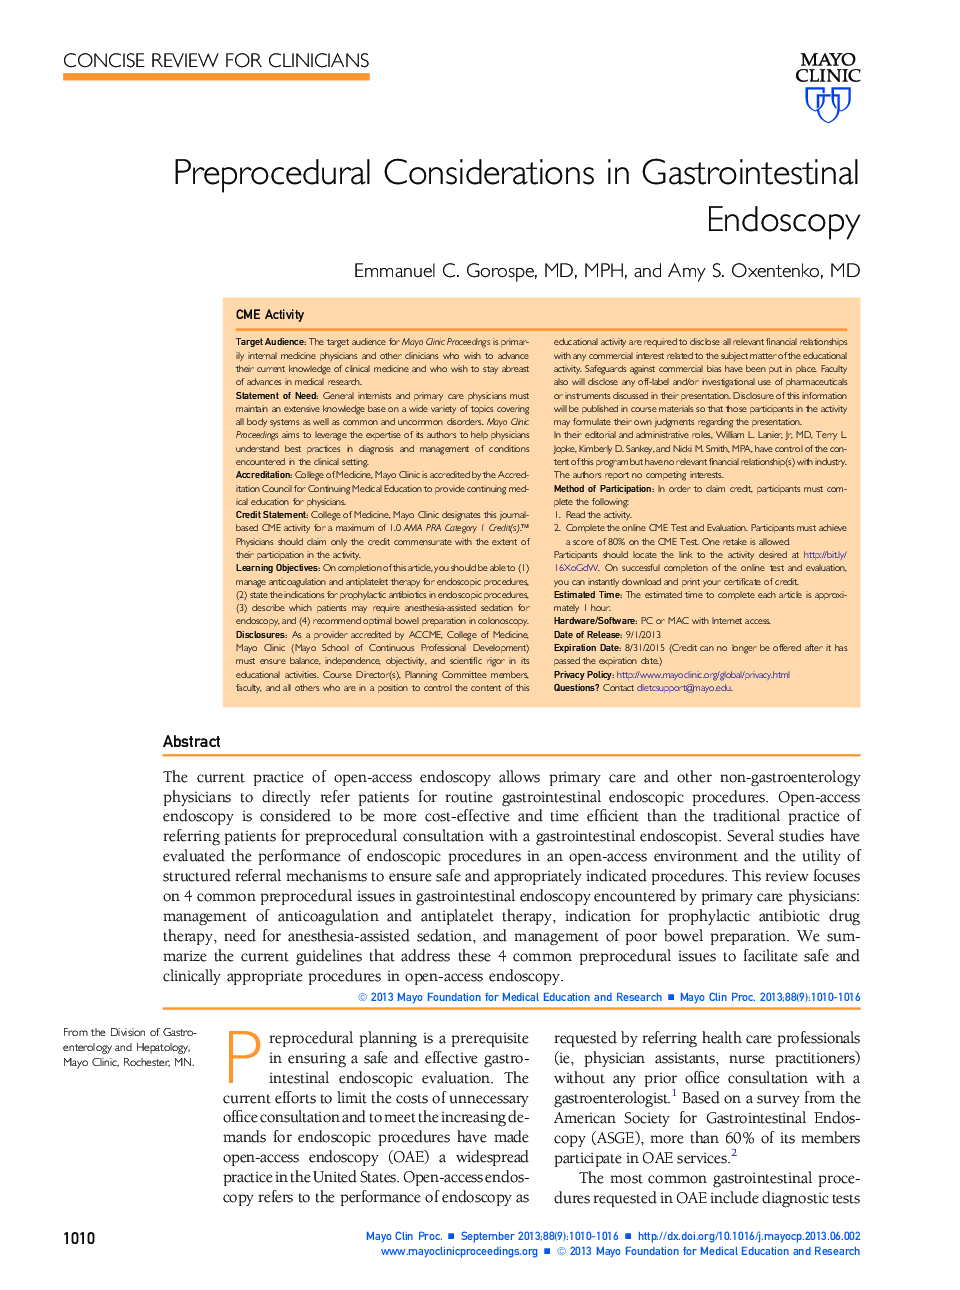 Preprocedural Considerations in Gastrointestinal Endoscopy